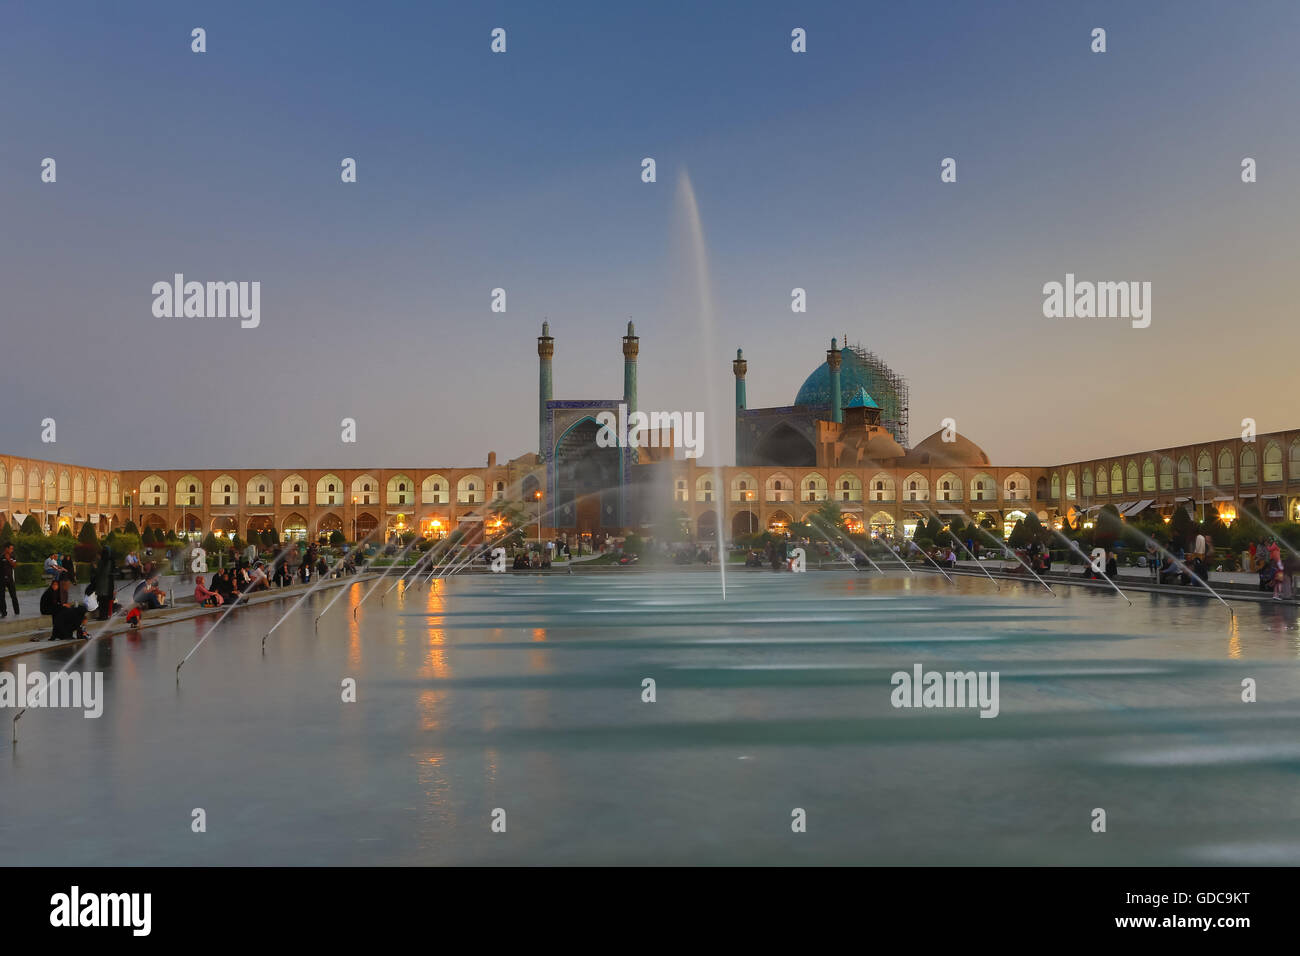 L'Iran, Ispahan, Ville de Naqsh-e Jahan Square,Mosquée Masjed-e Shah Banque D'Images